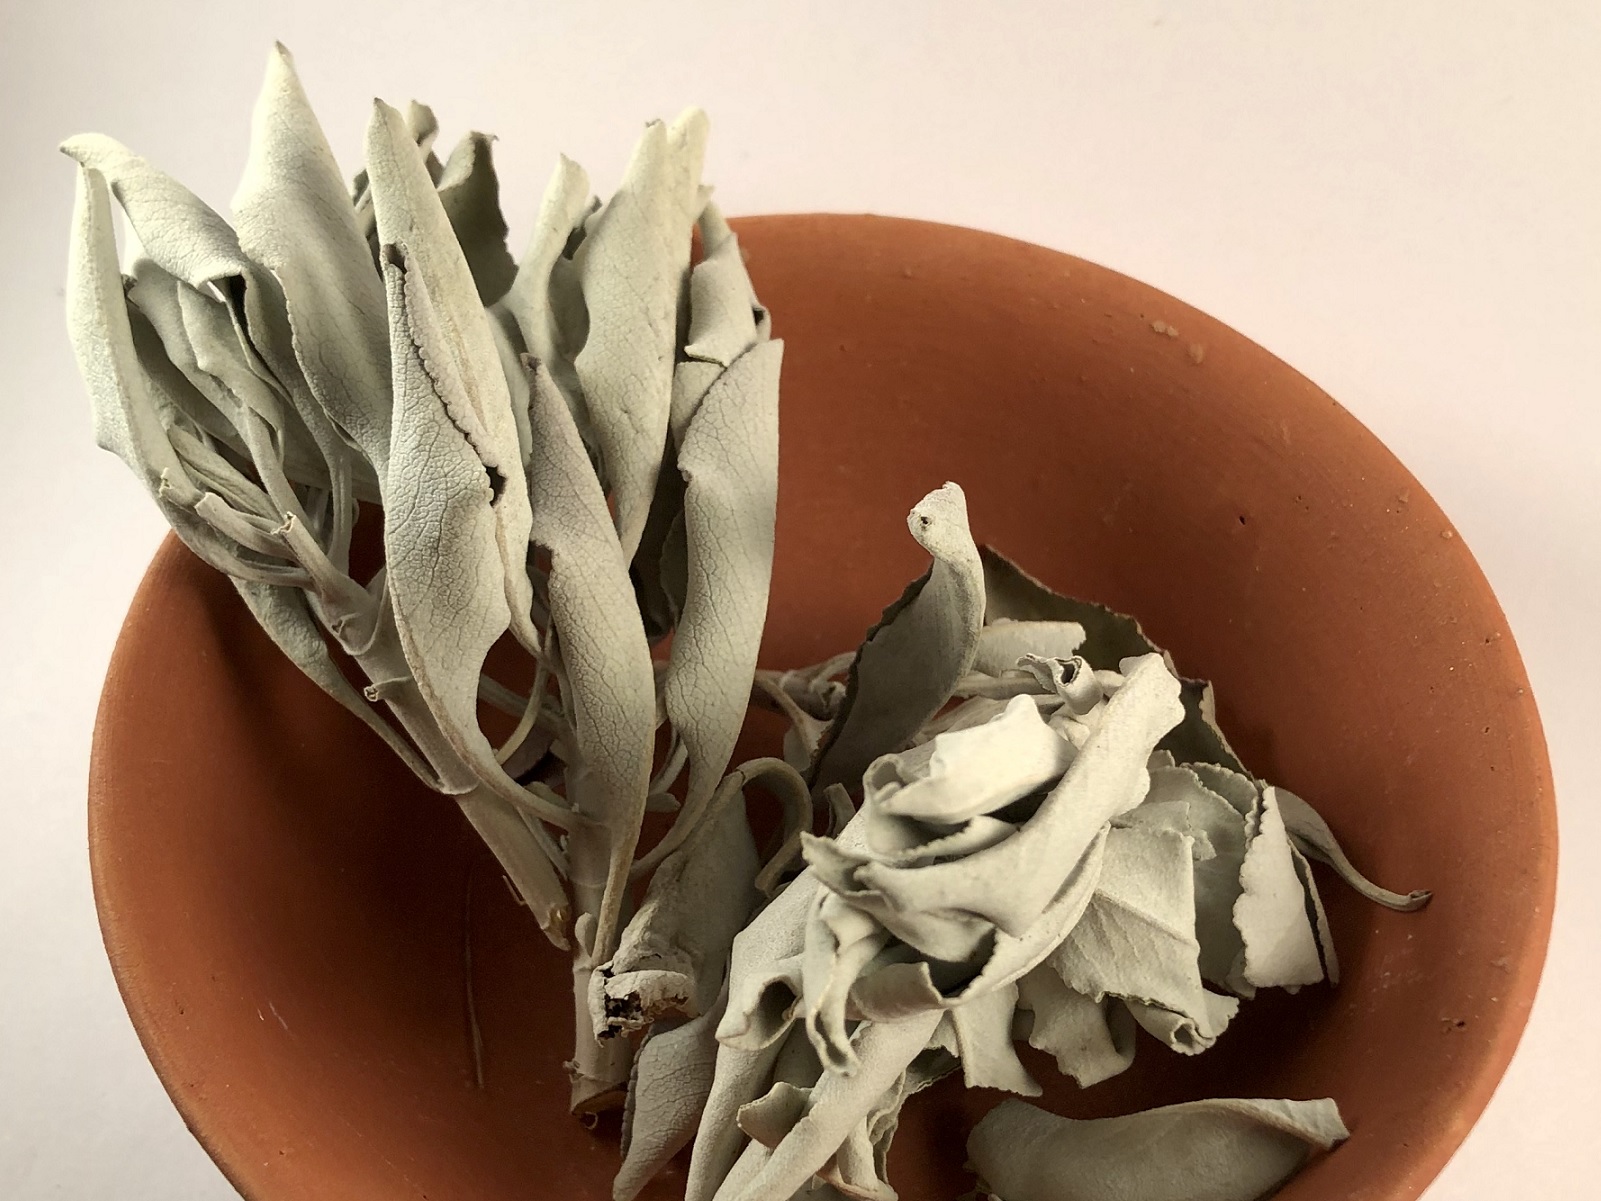 Weisser Salbei, ganze Blätter - Kraft der Reinigung (30 g)